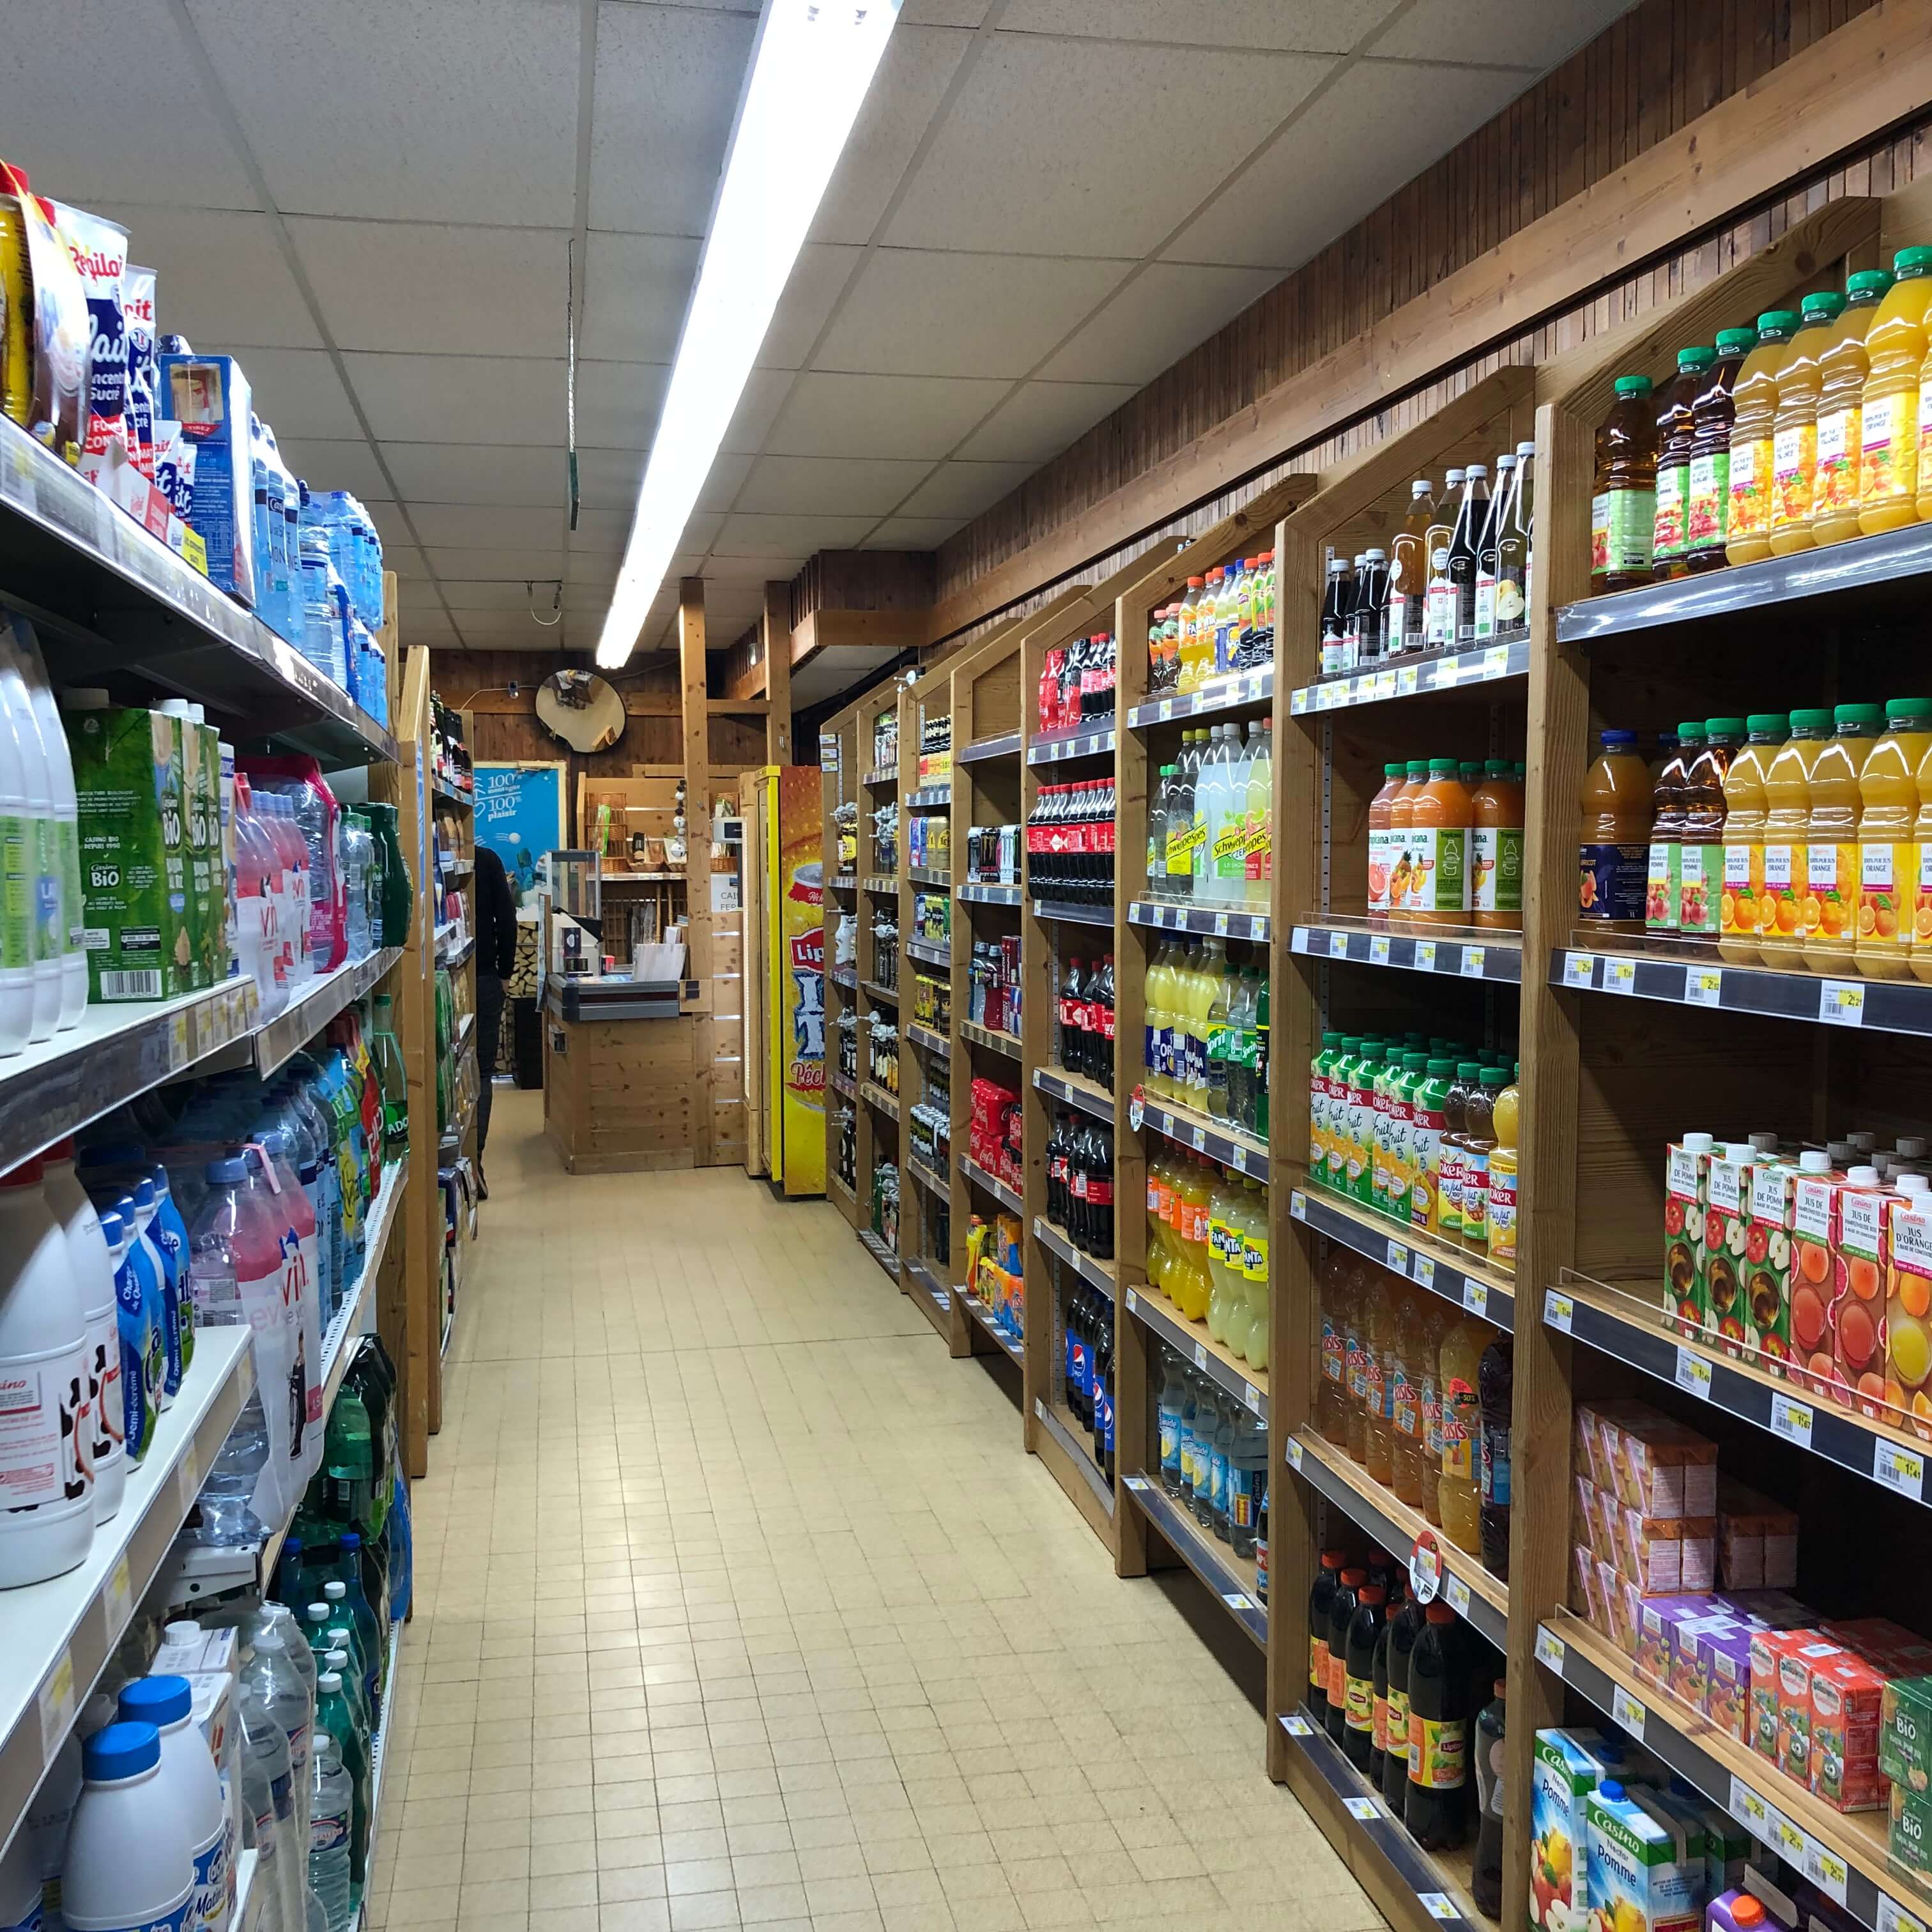 Sherpa supermarket Prapoutel les 7 Laux shelves